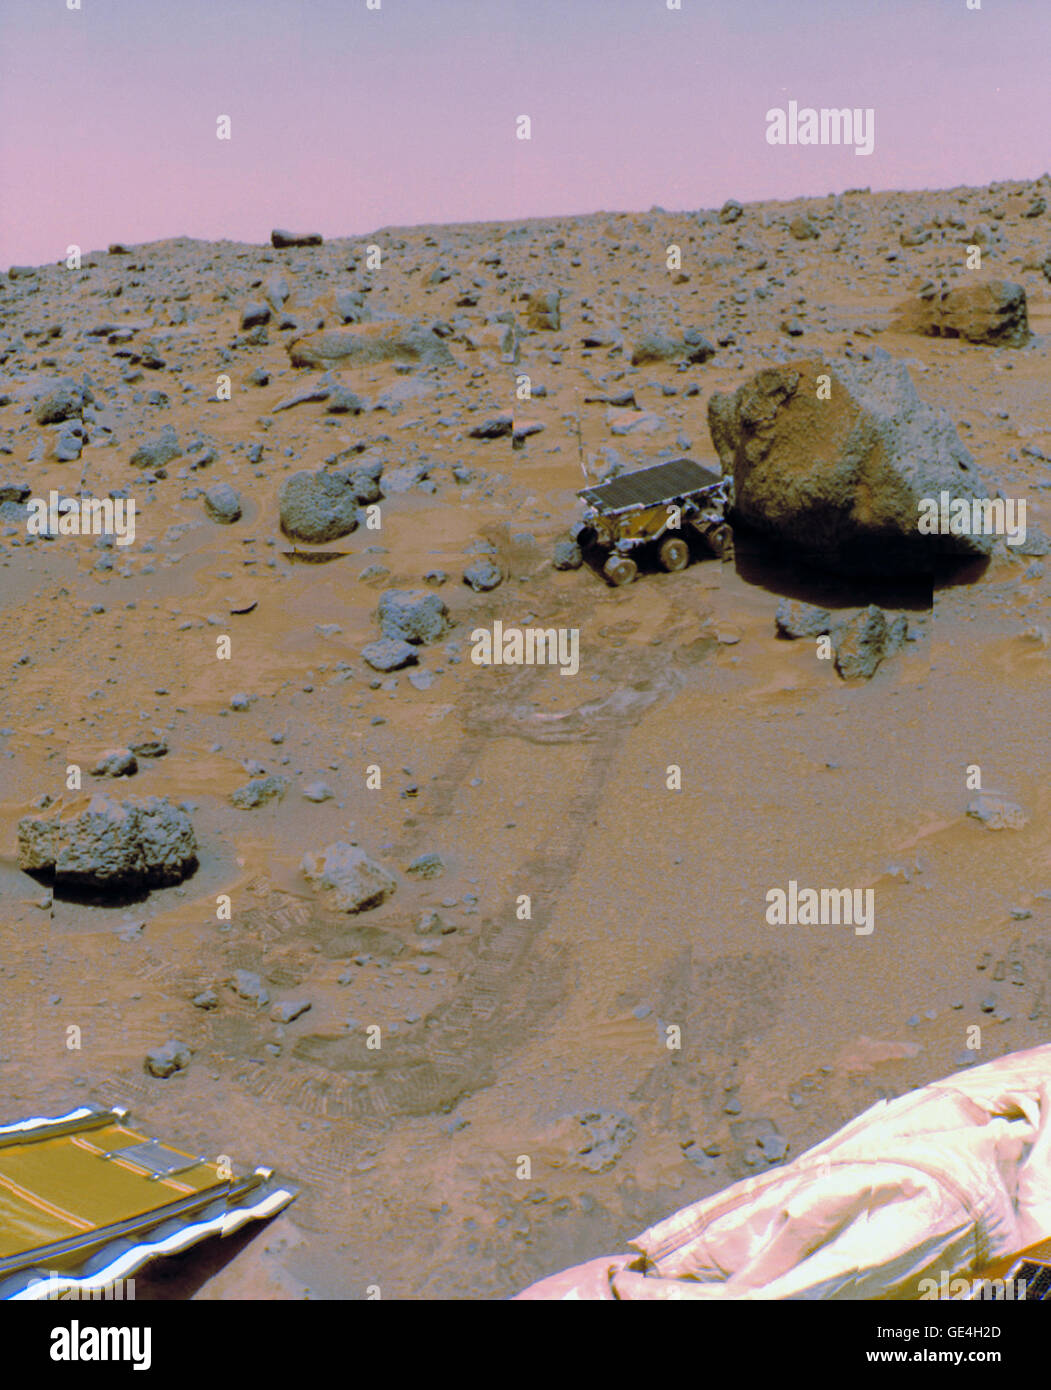 (5 settembre 1997) Pathfinder fotografato la superficie marziana e il Sojourner Rover durante la sua missione nel 1997. Nella foto il rover sta prendendo una misurazione APXS di Yogi rock su Sol 17-18 della missione. Immagine #: S97-11325 Foto Stock